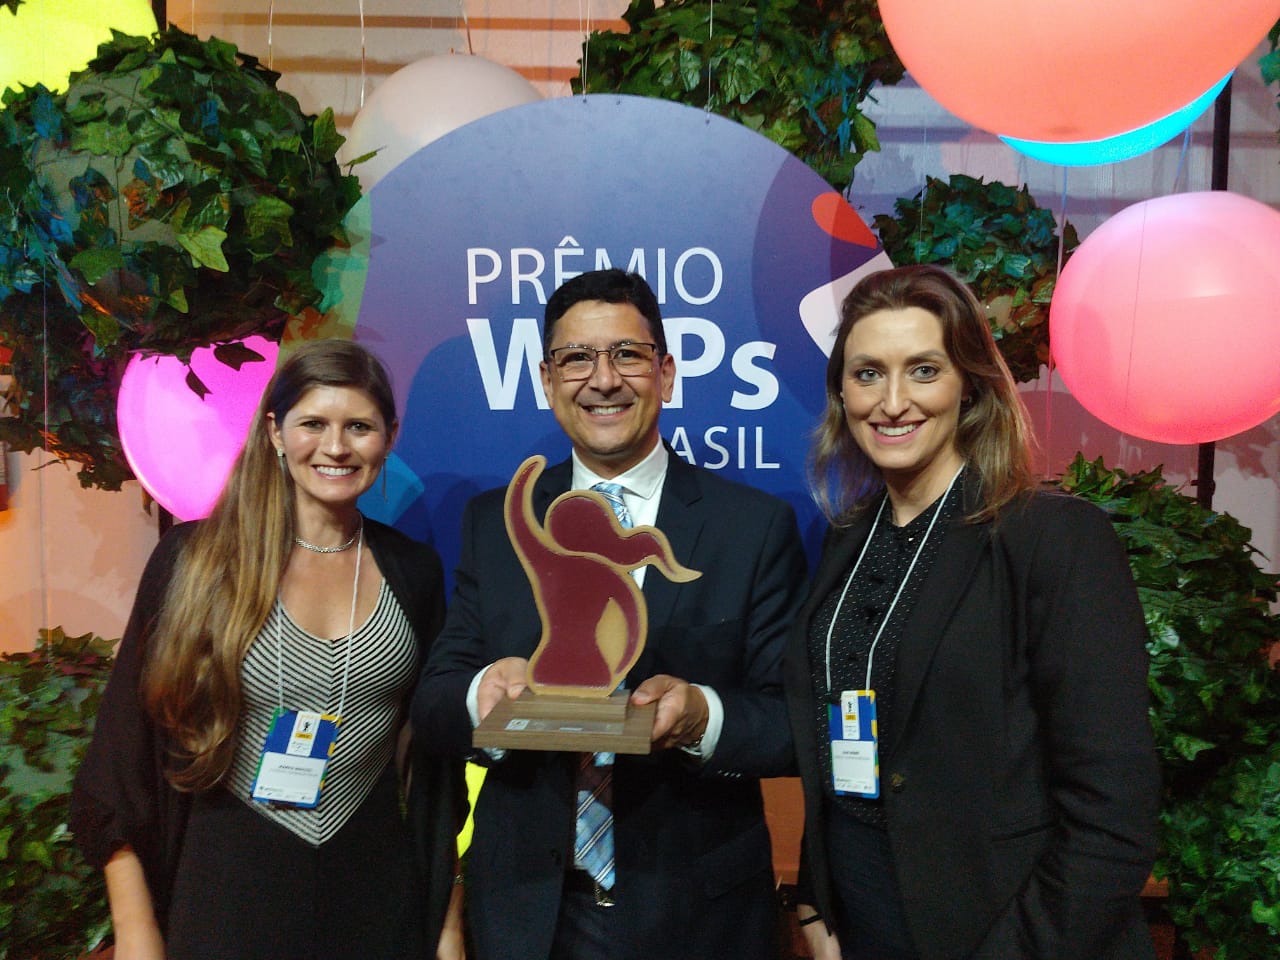  Eletrosul conquista Prêmio WEPs Brasil